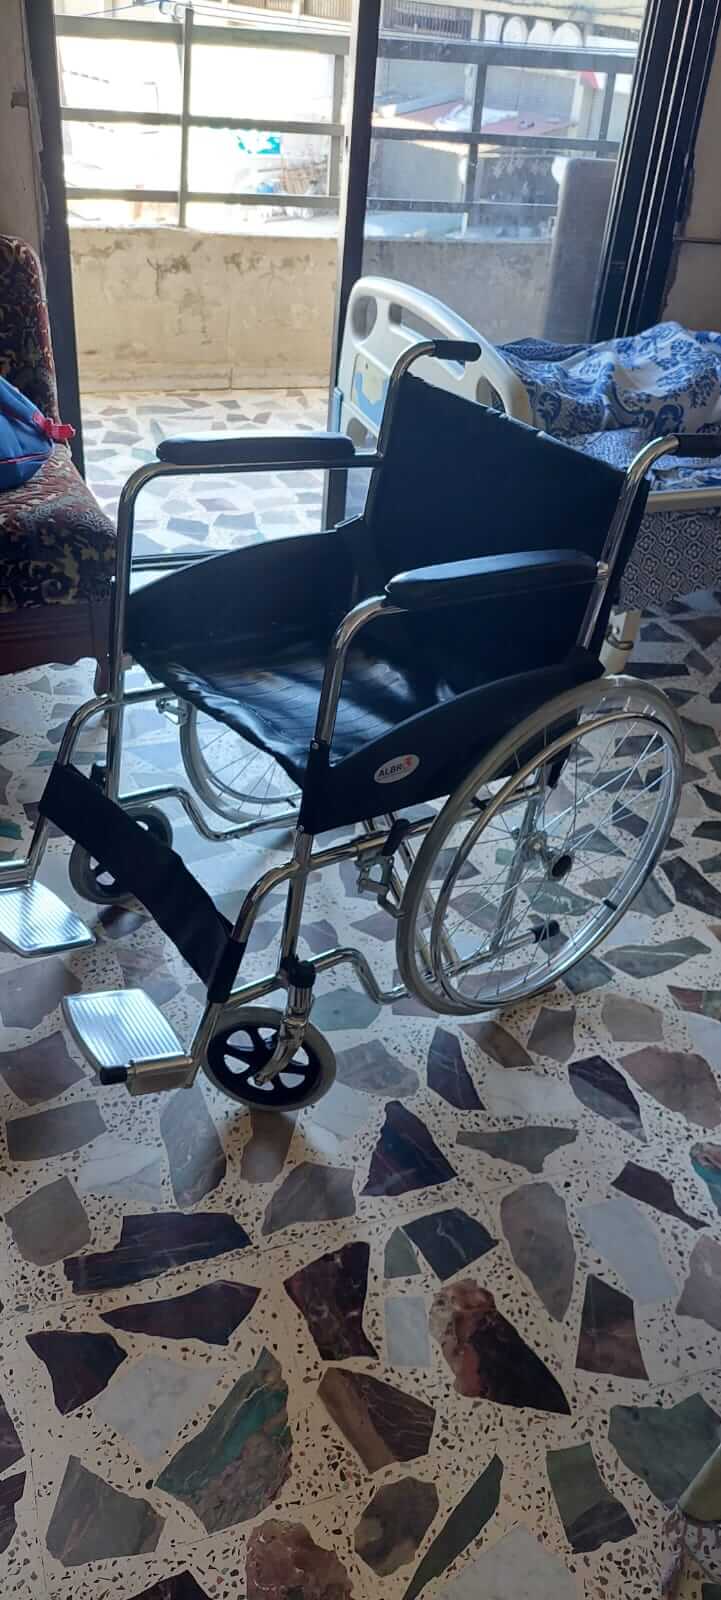 Wheel Chair